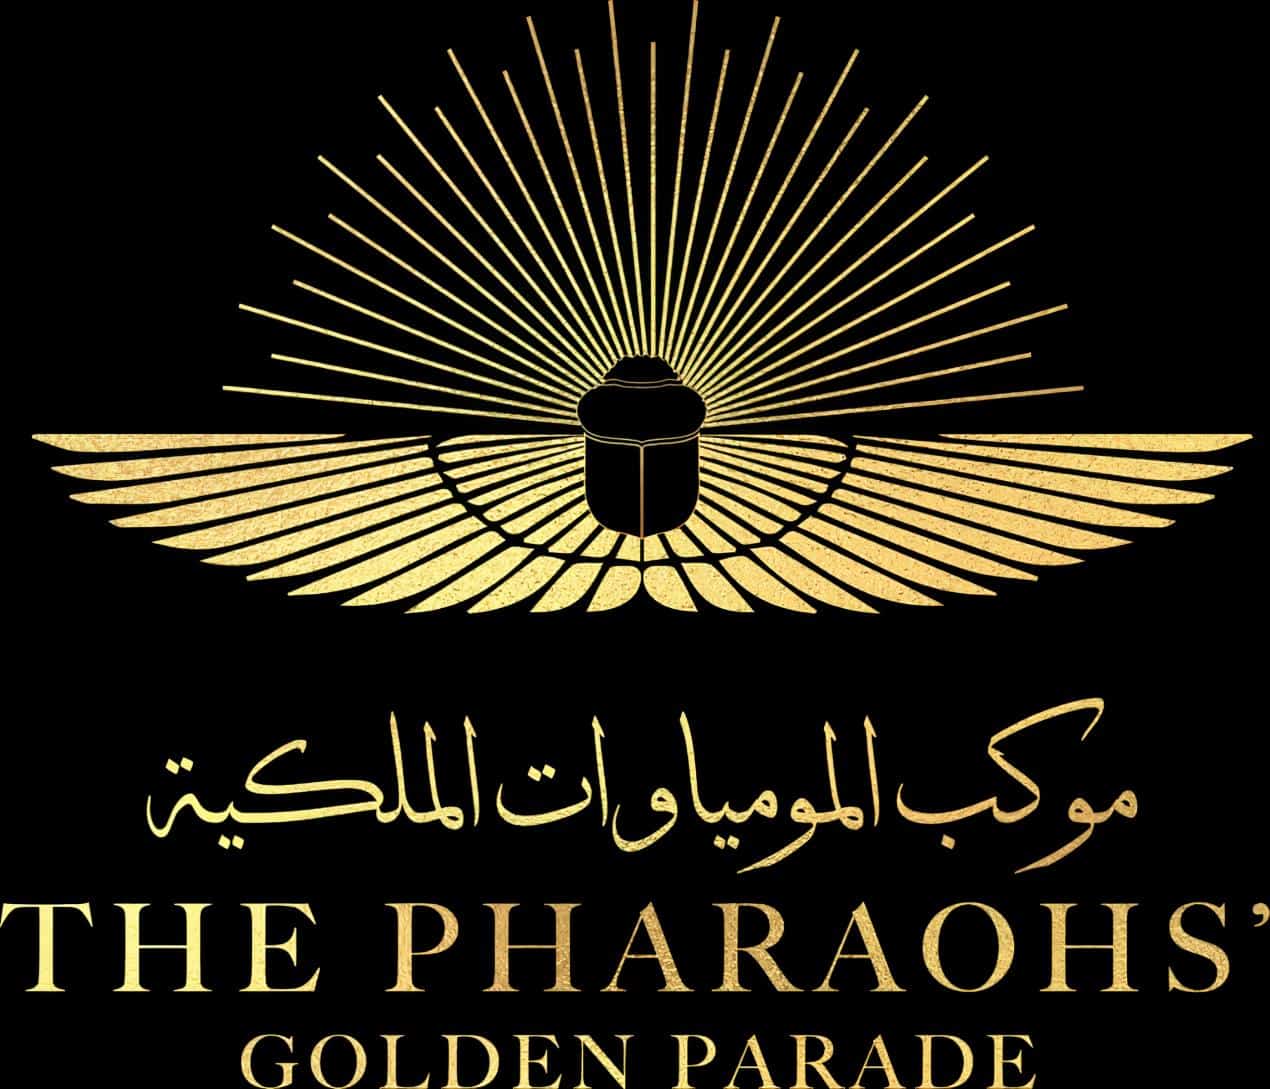 مصر تحتفل بالرحلة الذهبية للموكب الملكي لنقل المومياوات في حدث تاريخي